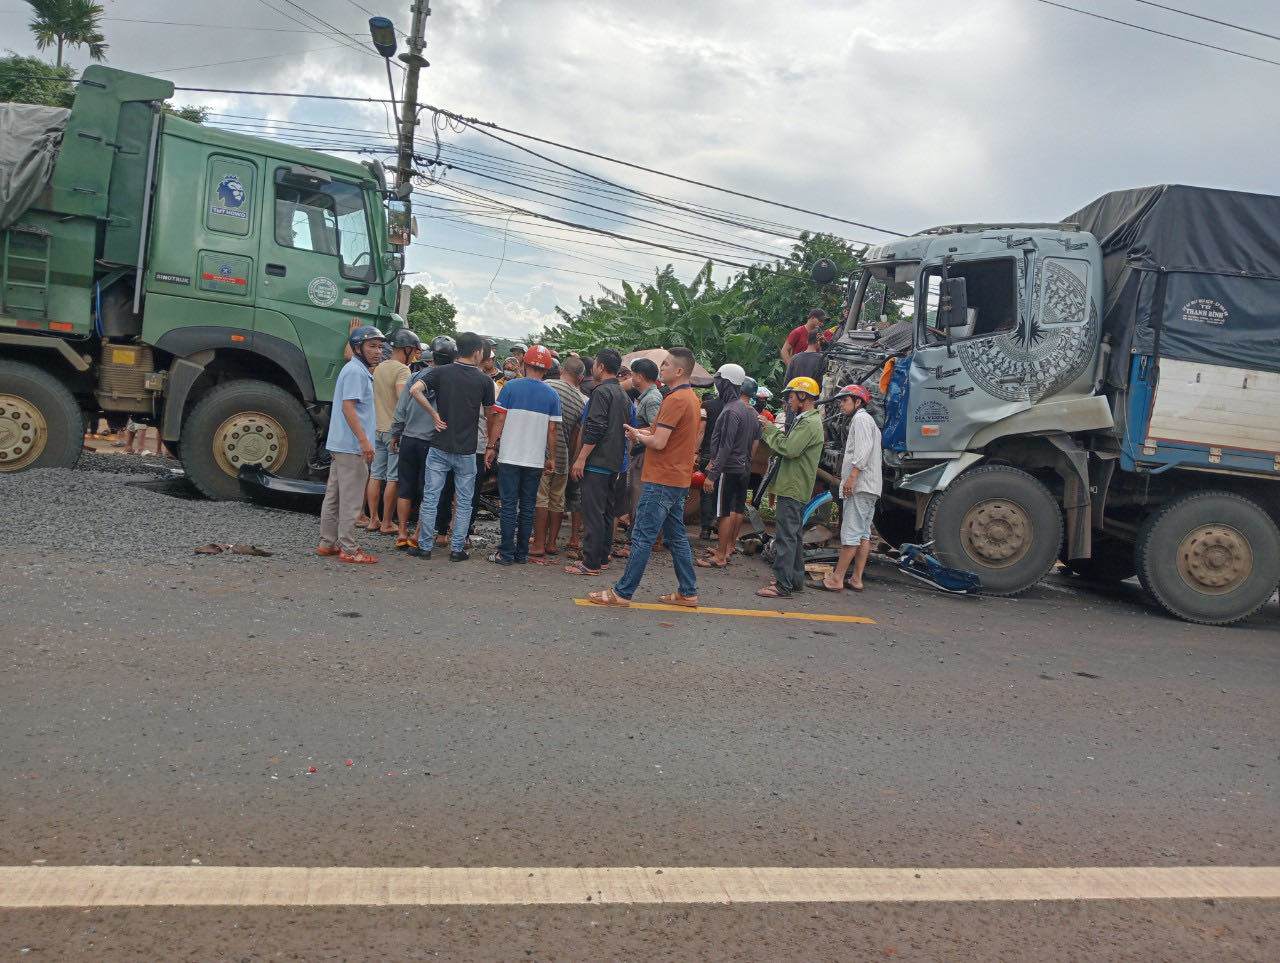 Vào&nbsp;15h ngày 12/8, tại Km 1646+950 đường Hồ Chí Minh, thuộc địa phận huyện Chư Pưh&nbsp;- tỉnh Gia Lai, xảy ra vụ va chạm liên hoàn giữa 2 xe tải và ô tô con chở các thành viên CLB HAGL.